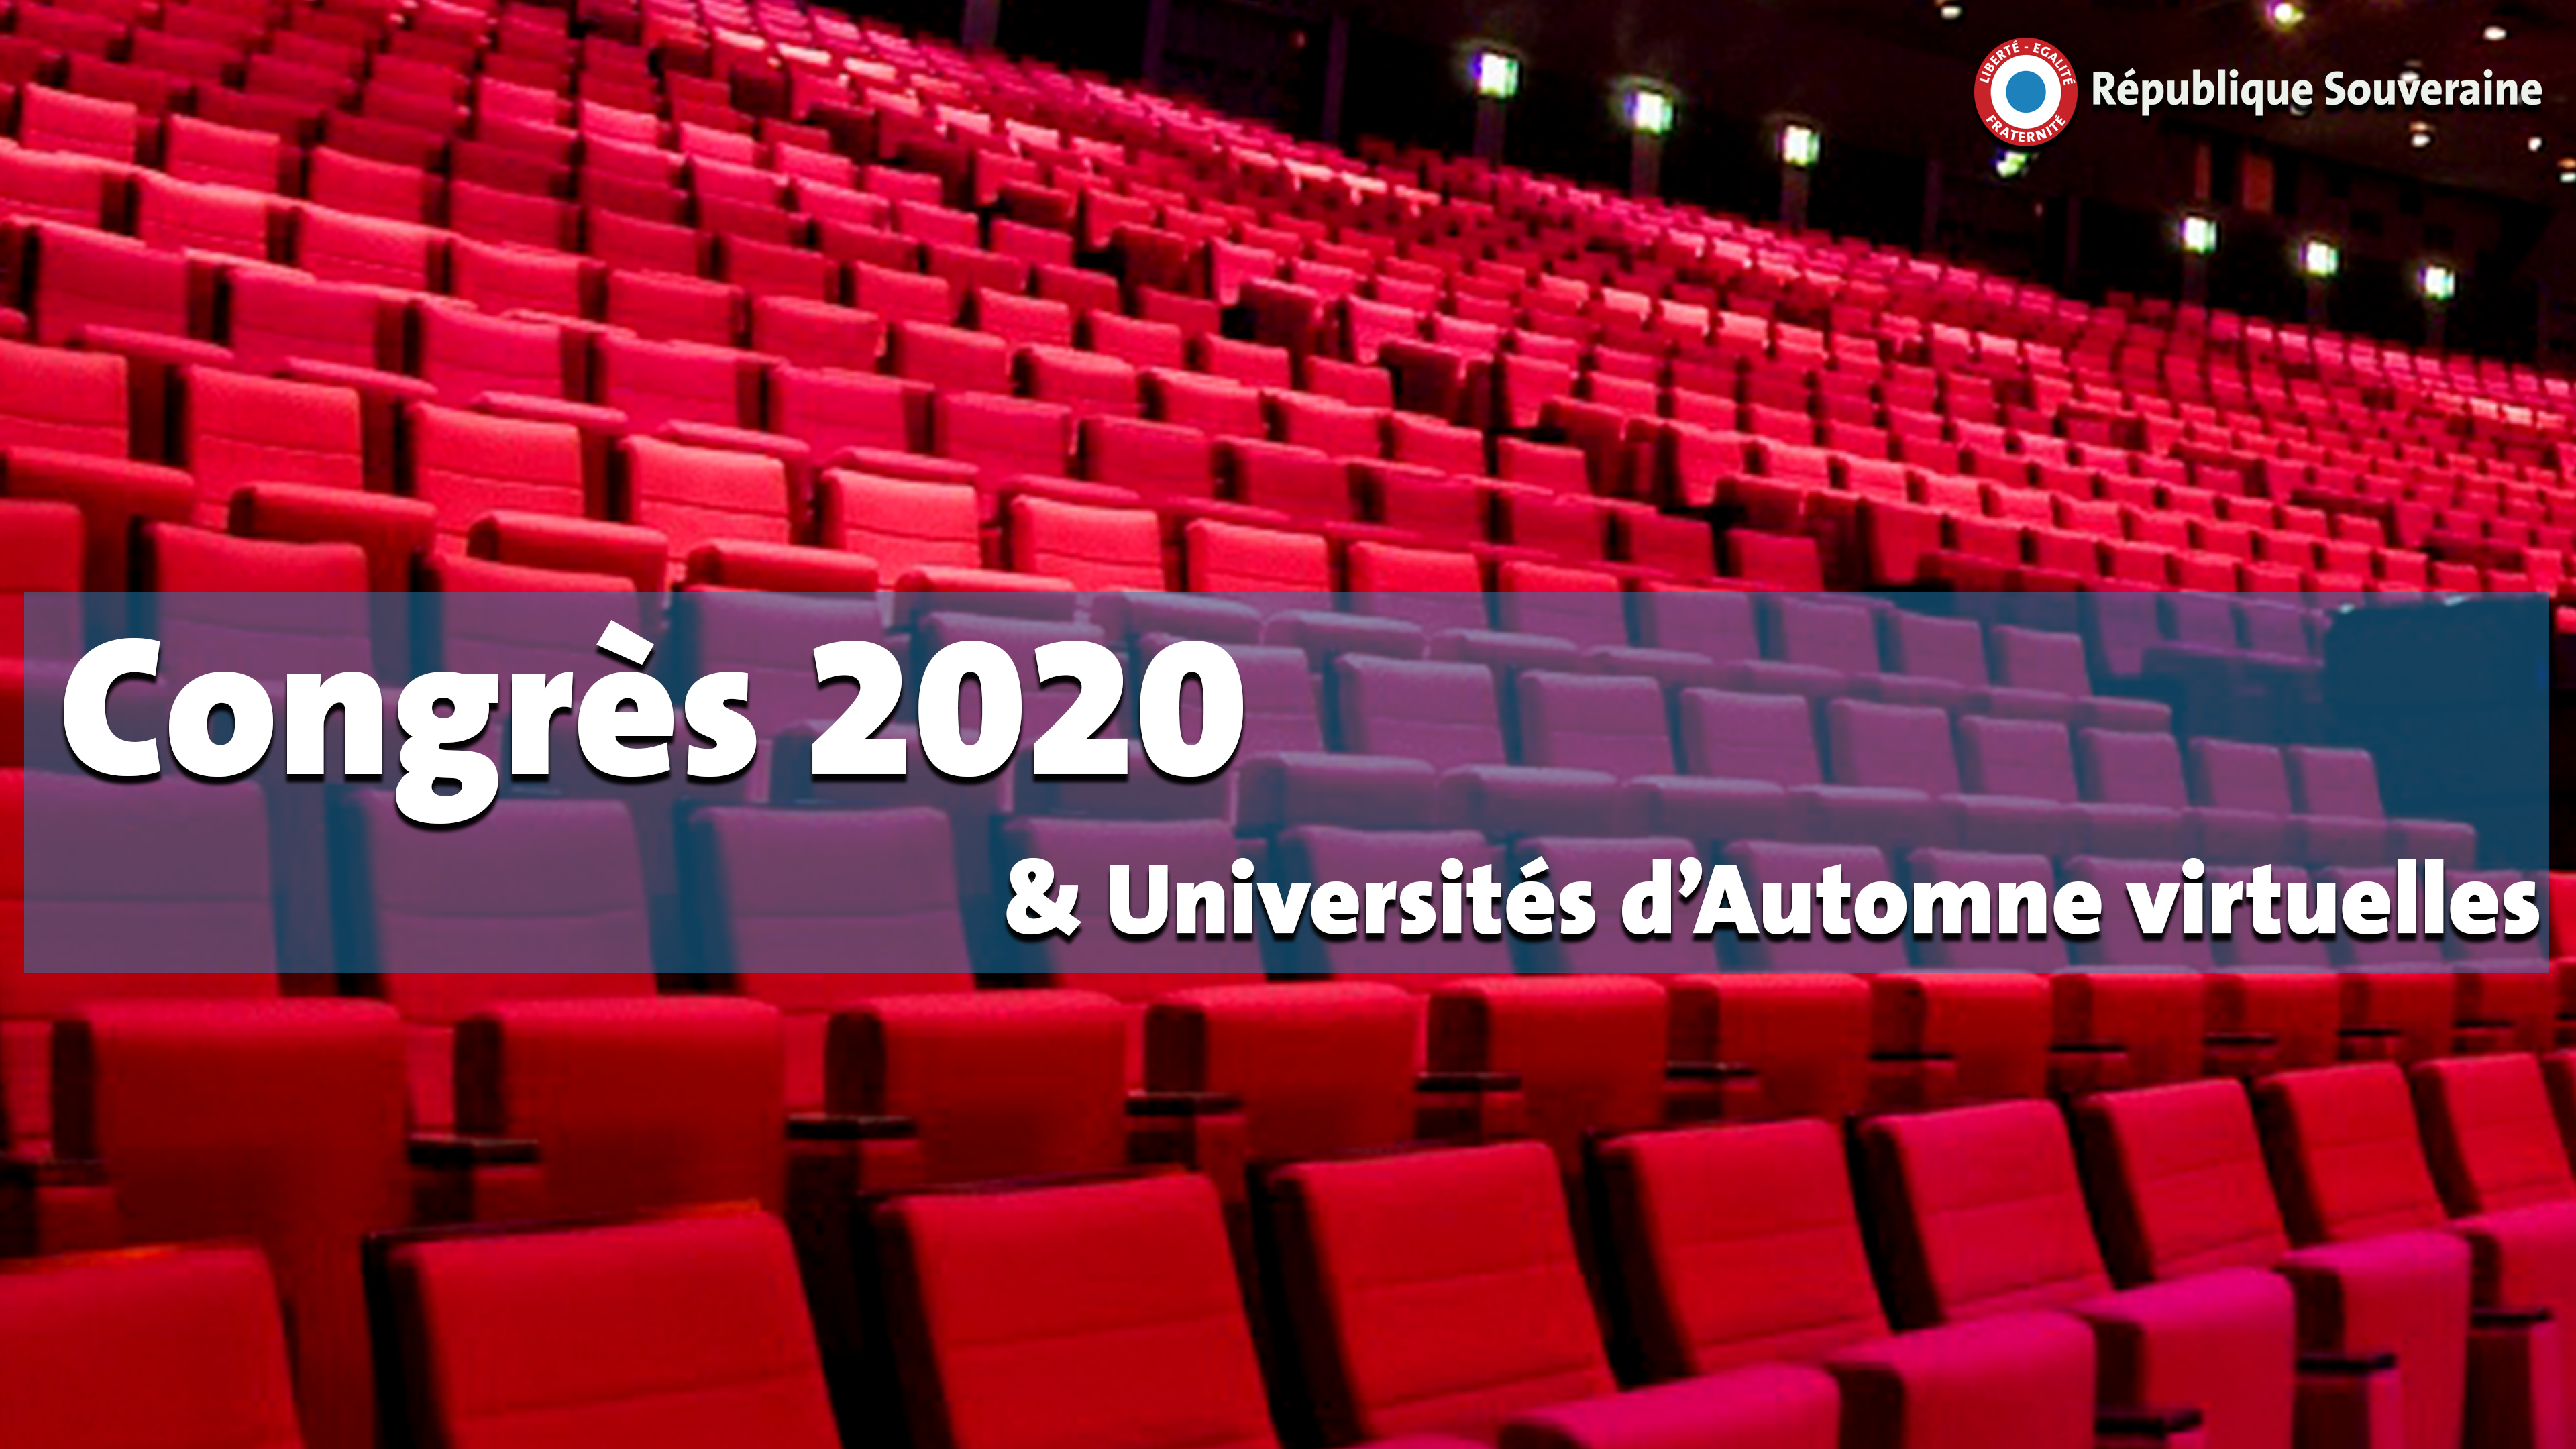 https://www.republique-souveraine.fr/wp-content/uploads/2020/11/Bannier-congres-UA.png